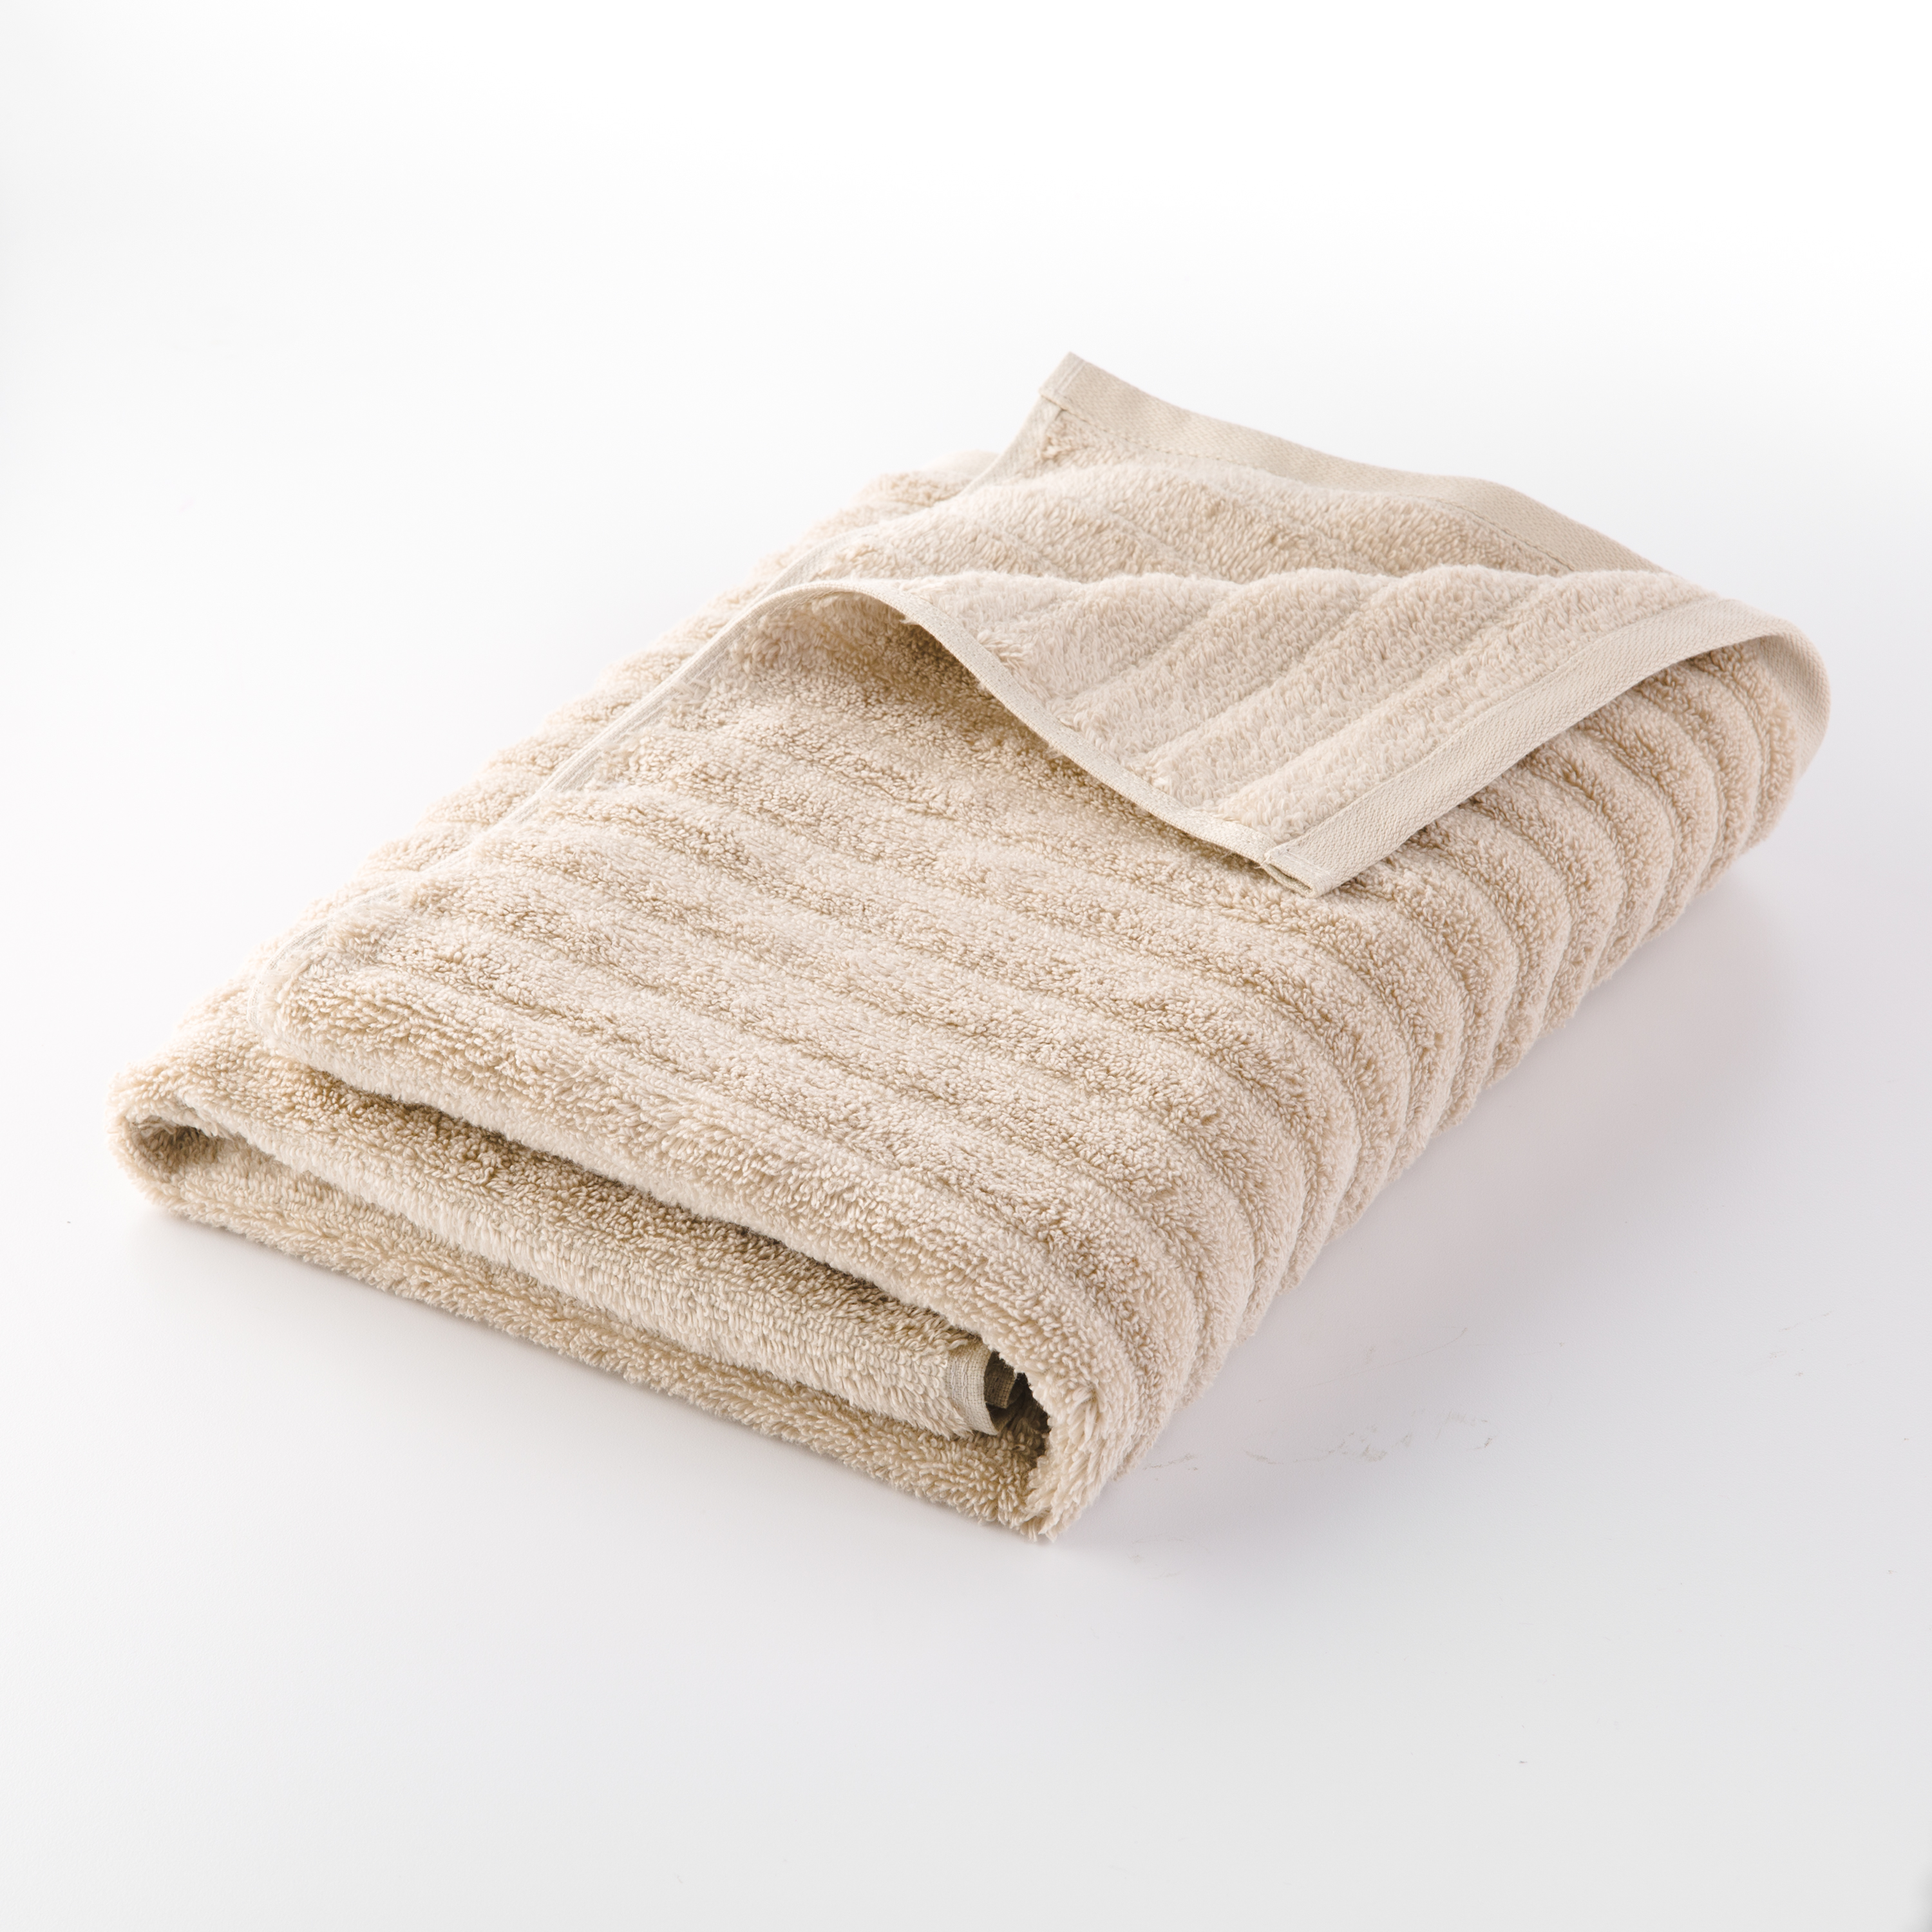 Mainstays 6 Piece Textures Cotton Bath Towel Set, Beige - image 4 of 9